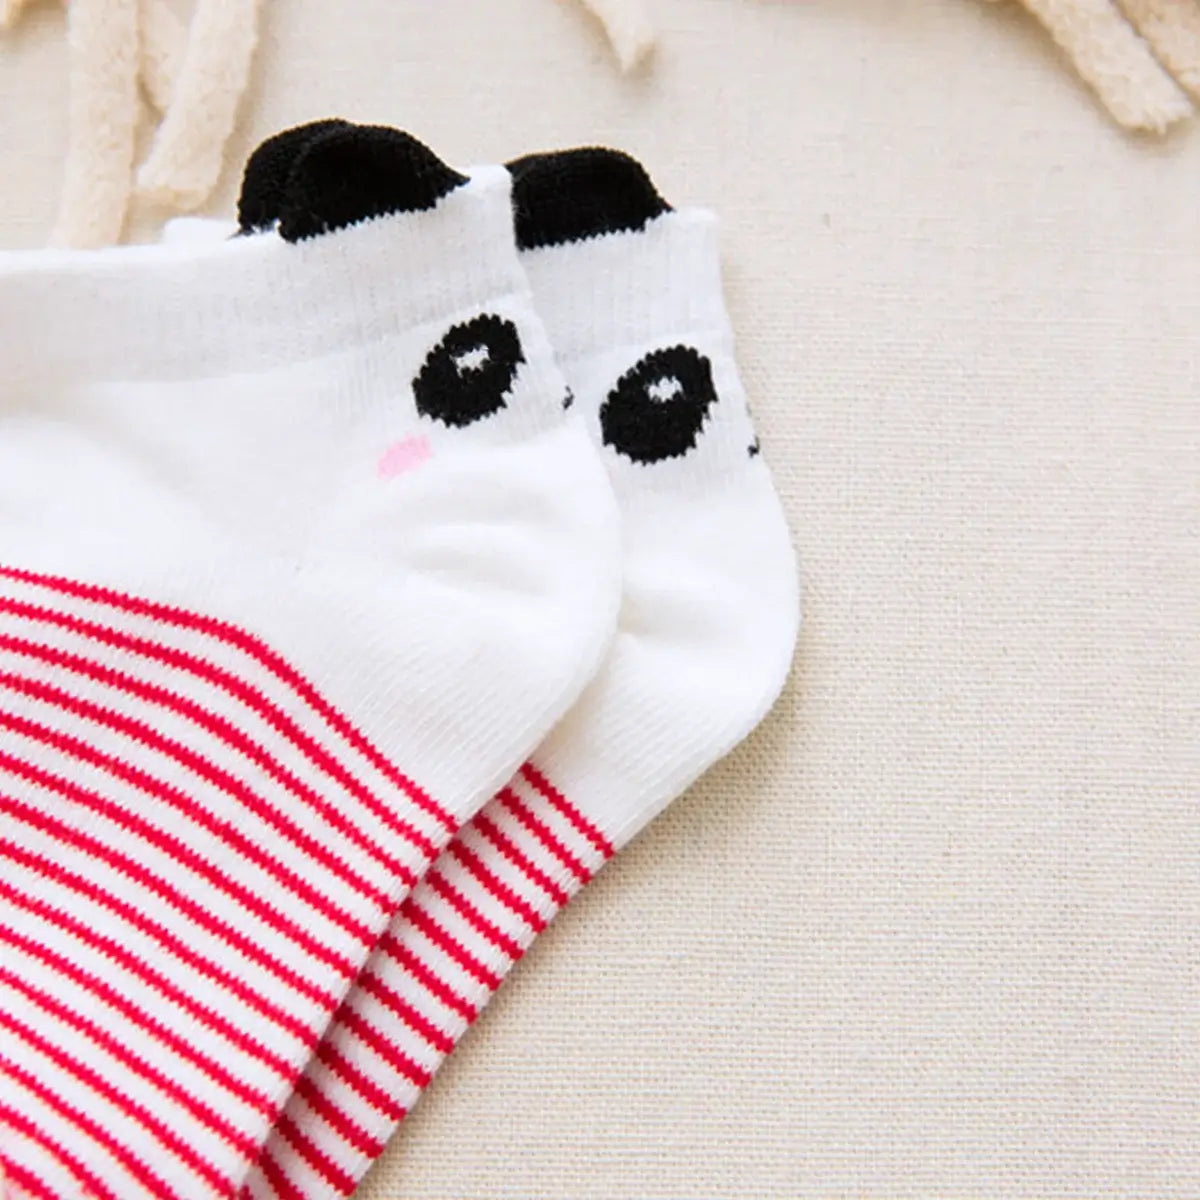 Chaussettes Enfants Pandas (Lot 5 paires)